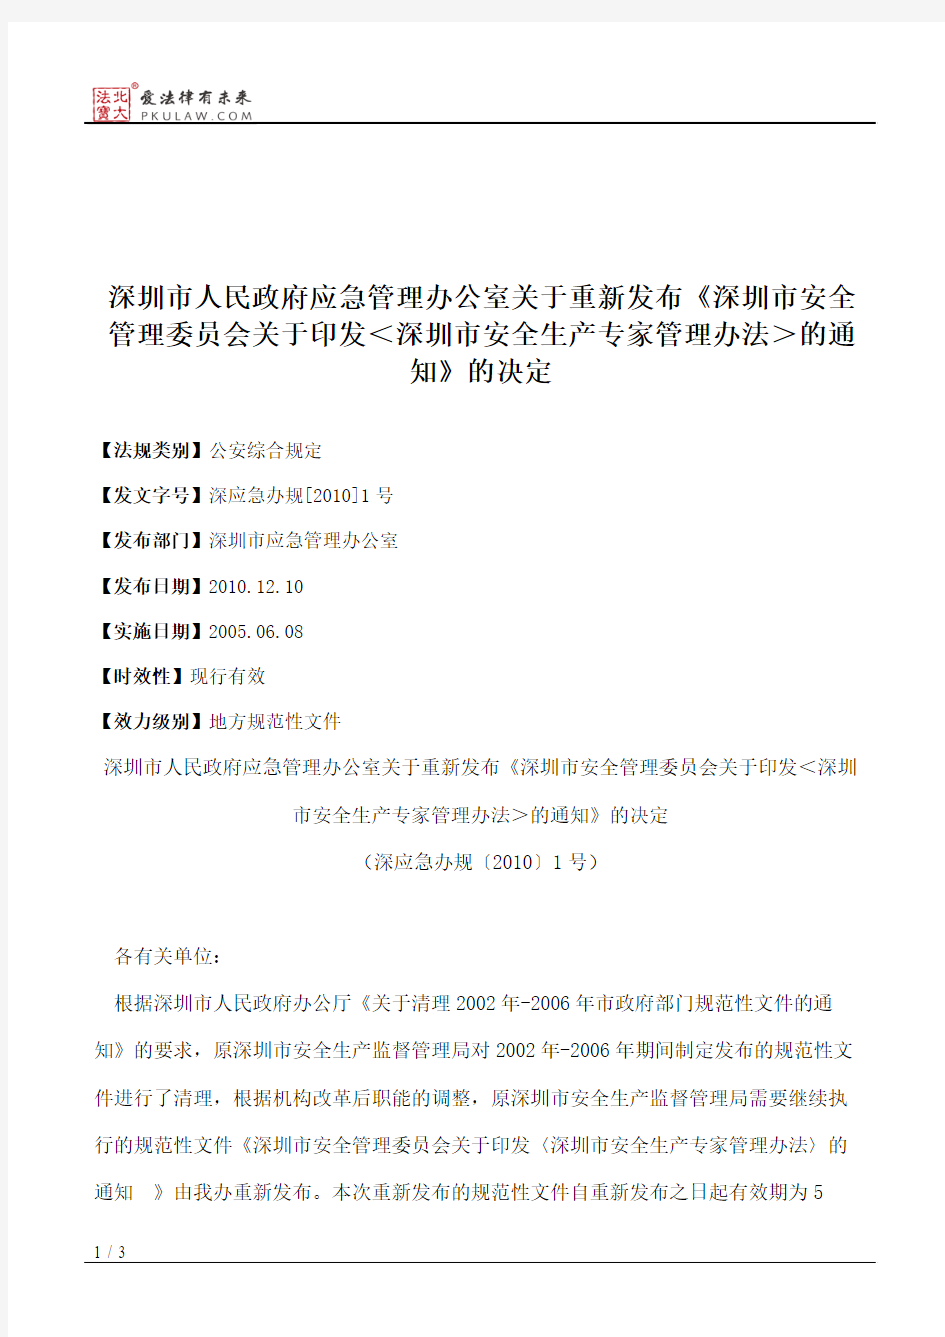 深圳市人民政府应急管理办公室关于重新发布《深圳市安全管理委员